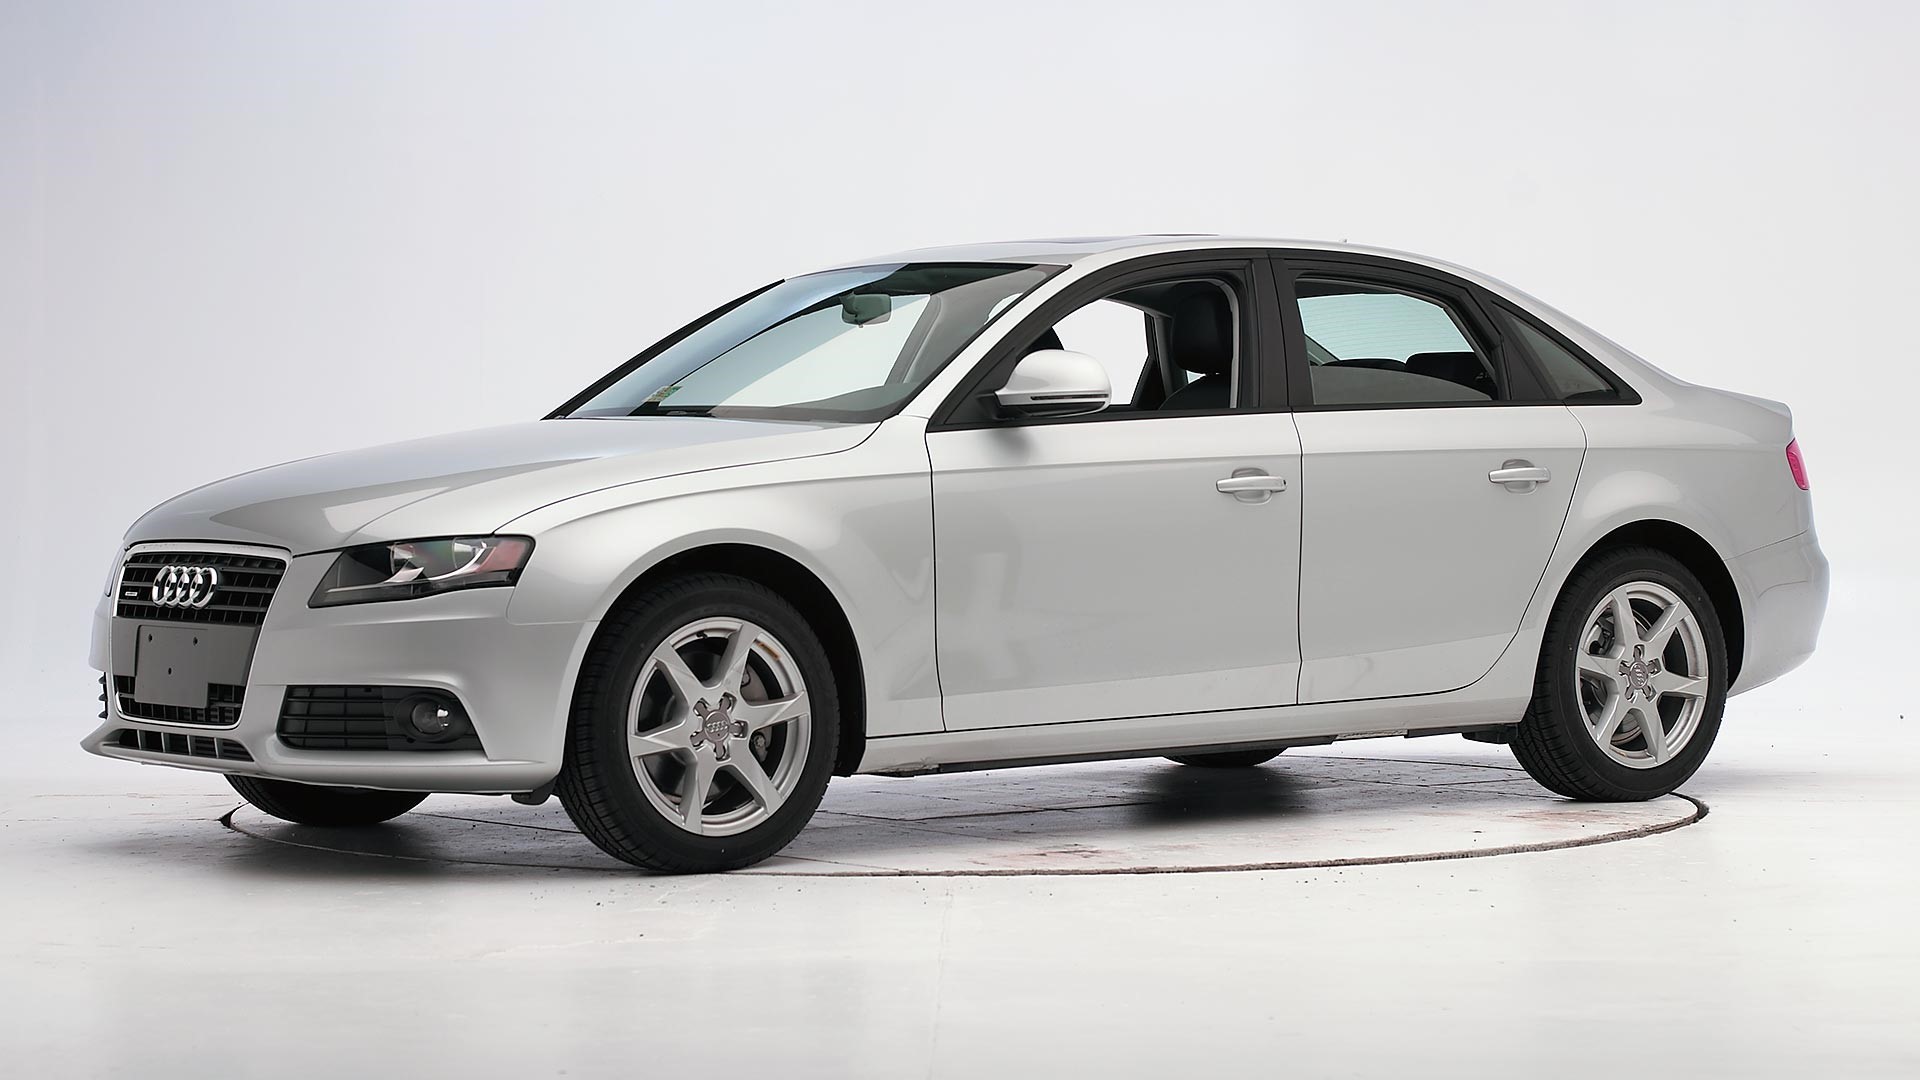 Alerta de Seguridad: Vehículos Audi modelo A4, años 2005-2009